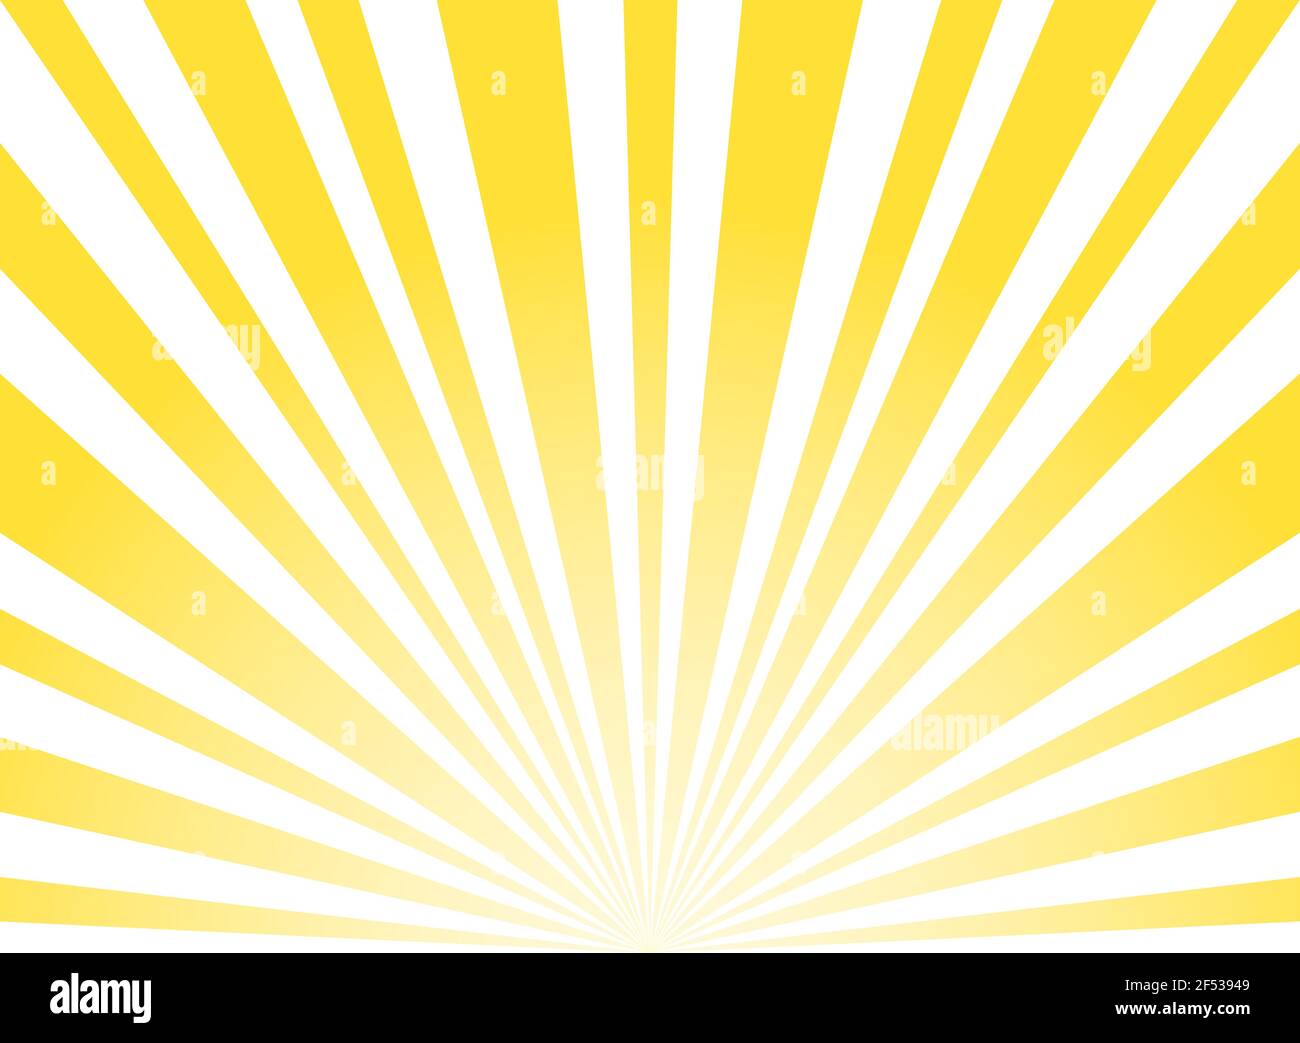 Luce del sole astratta ampio sfondo. Sfondo orizzontale a raffica di colore giallo e bianco. Illustrazione vettoriale. Fascio di sole raggio Sunburst pattern sfondo. Illustrazione Vettoriale